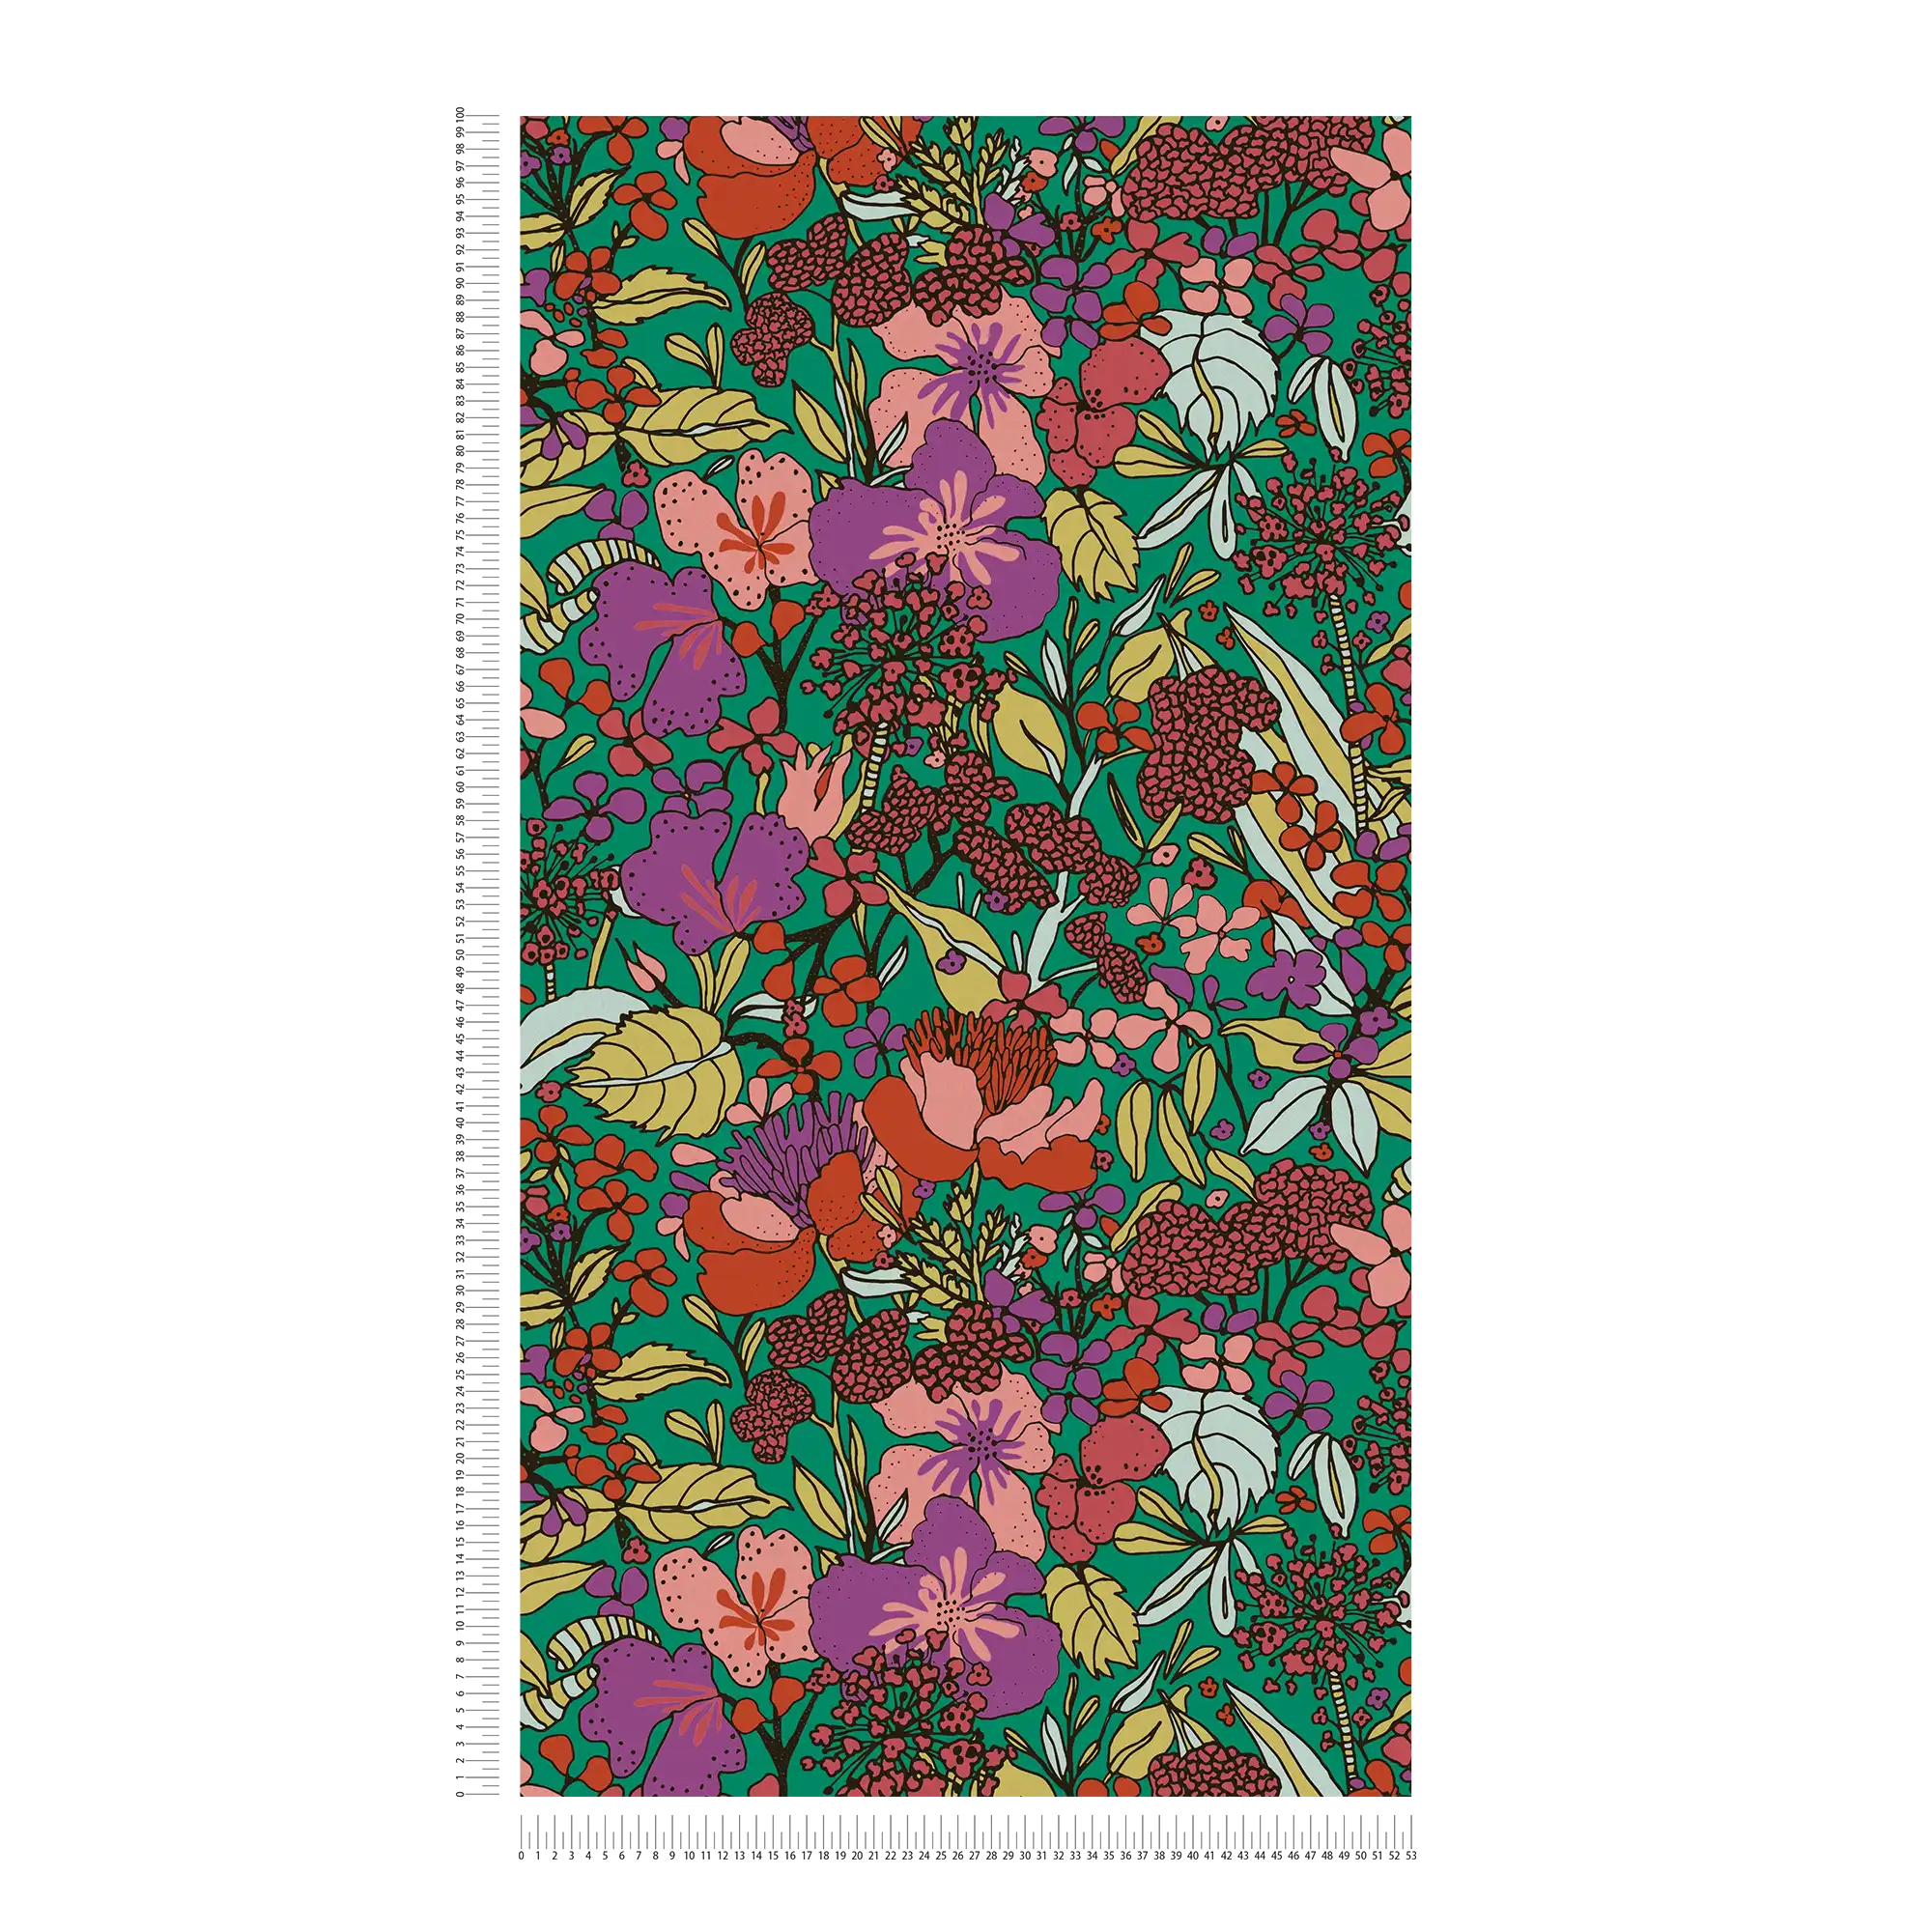             Papier peint motif floral multicolore style Colour Block - multicolore, vert, rouge
        